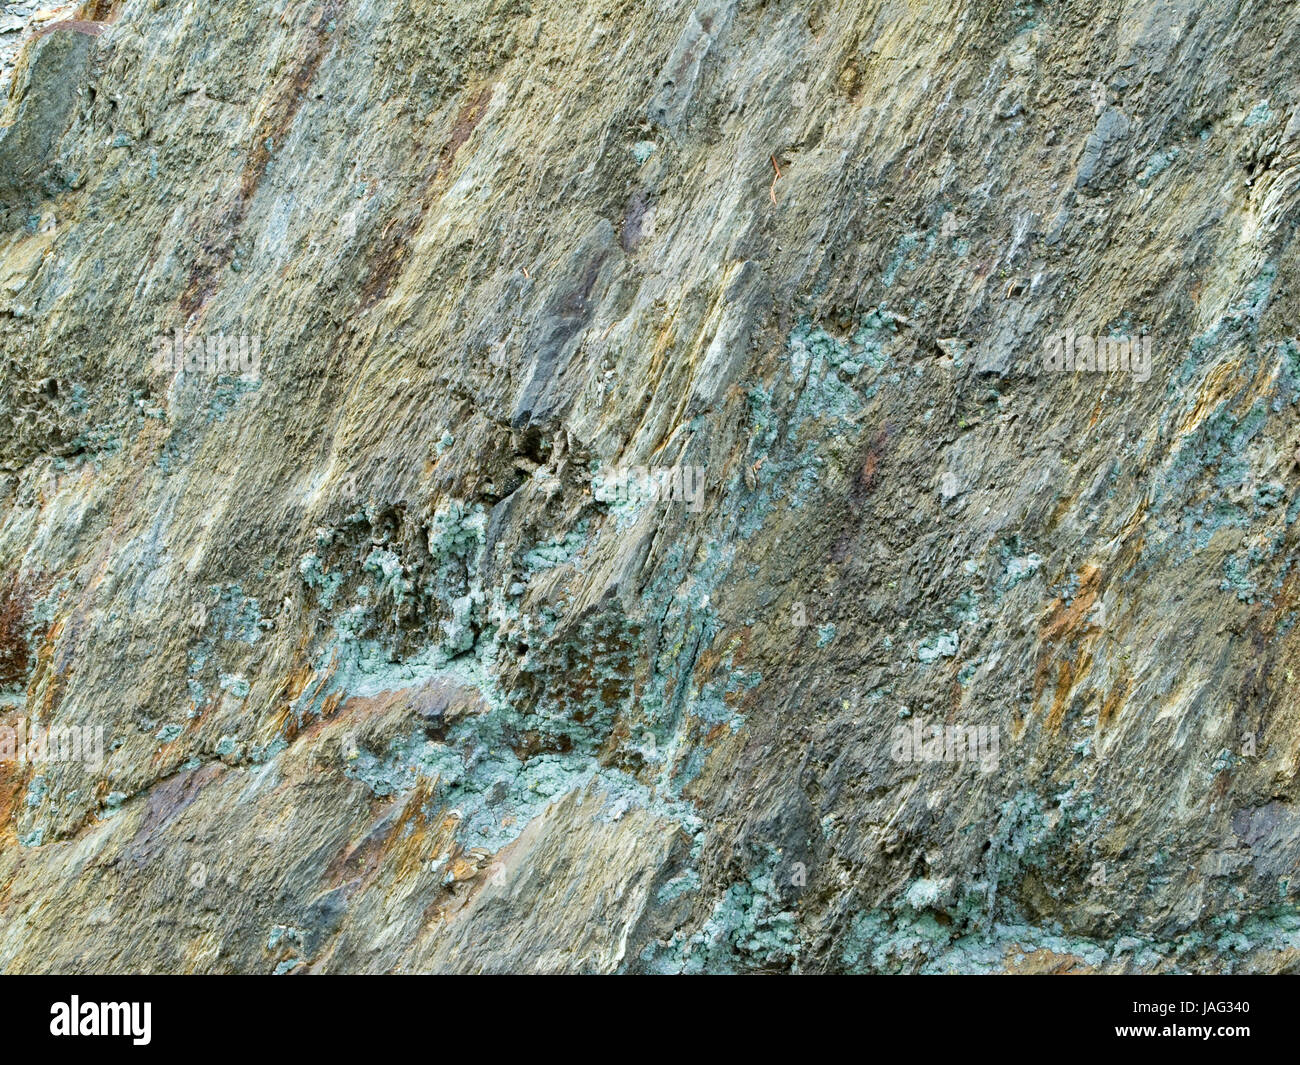 formatfüllende Aufnahme feiner Gesteinsschichten mit Grünspanablagerungen; Fundort: Südtirol Stock Photo